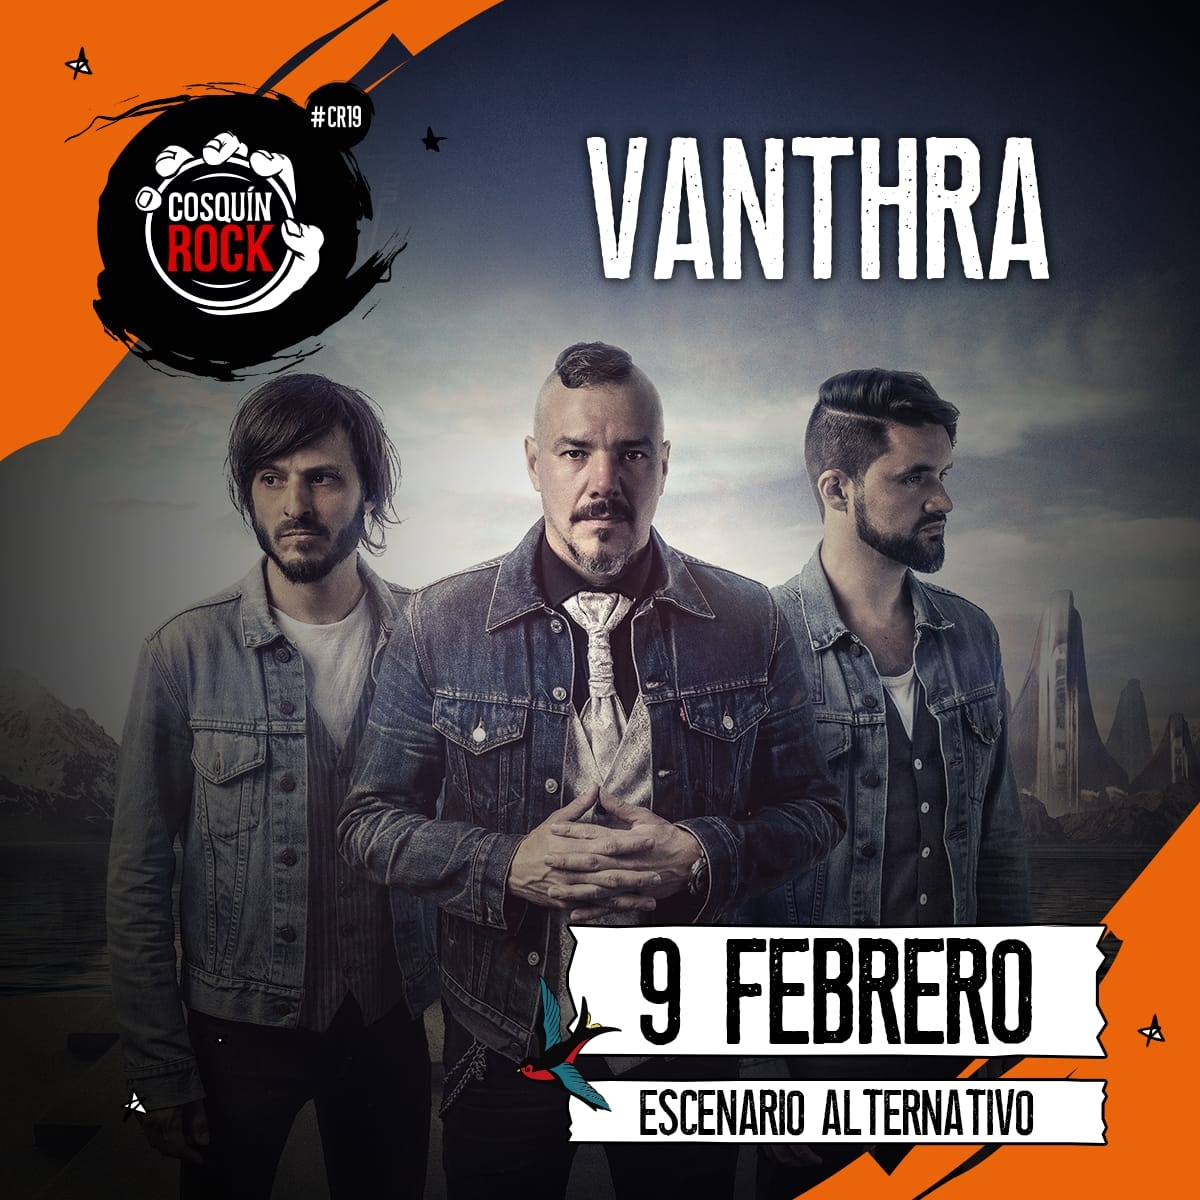 Vanthra confirma su presentación en el Cosquín Rock 2019!